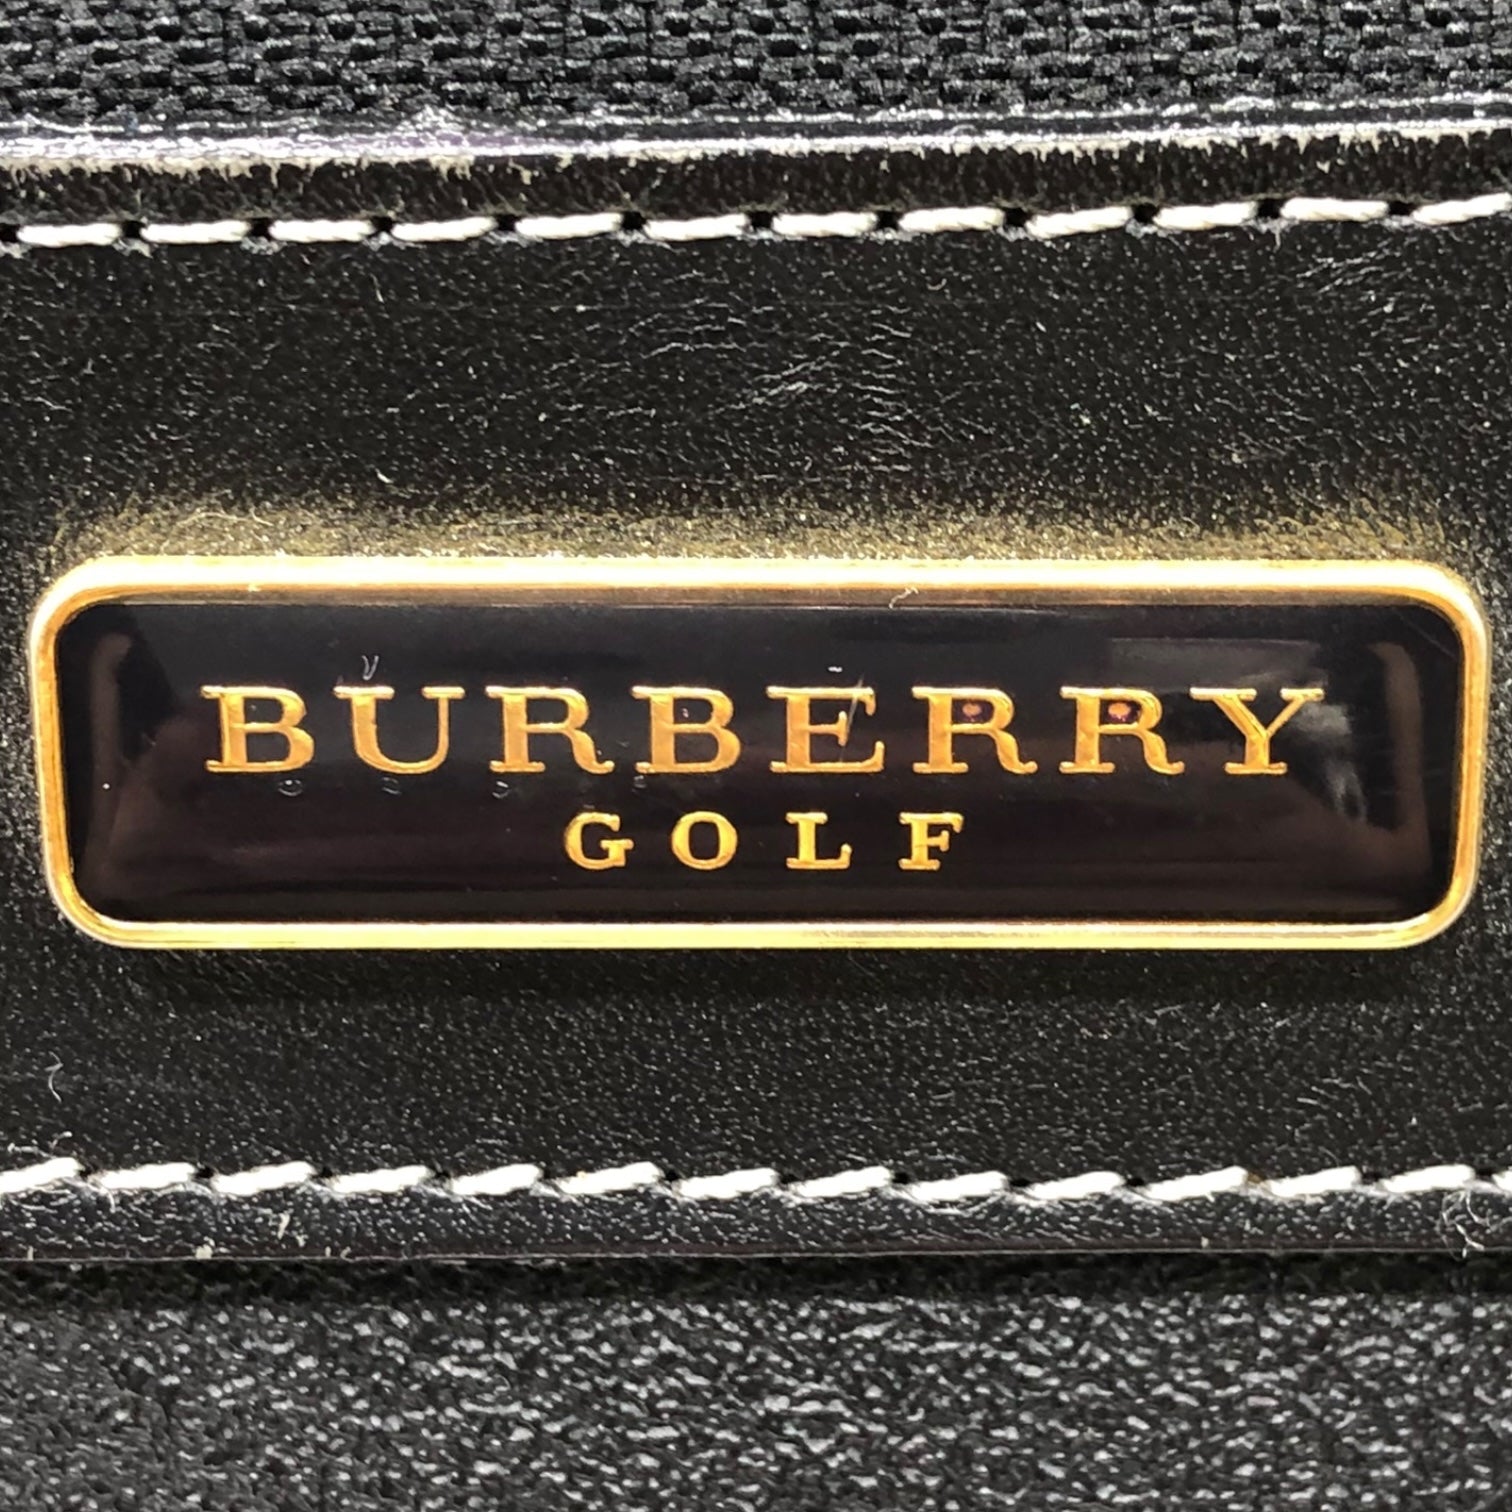 BURBERRY GOLF(バーバリーゴルフ) ノヴァチェック レザー ボストンバッグ 旅行 鞄 ブラック